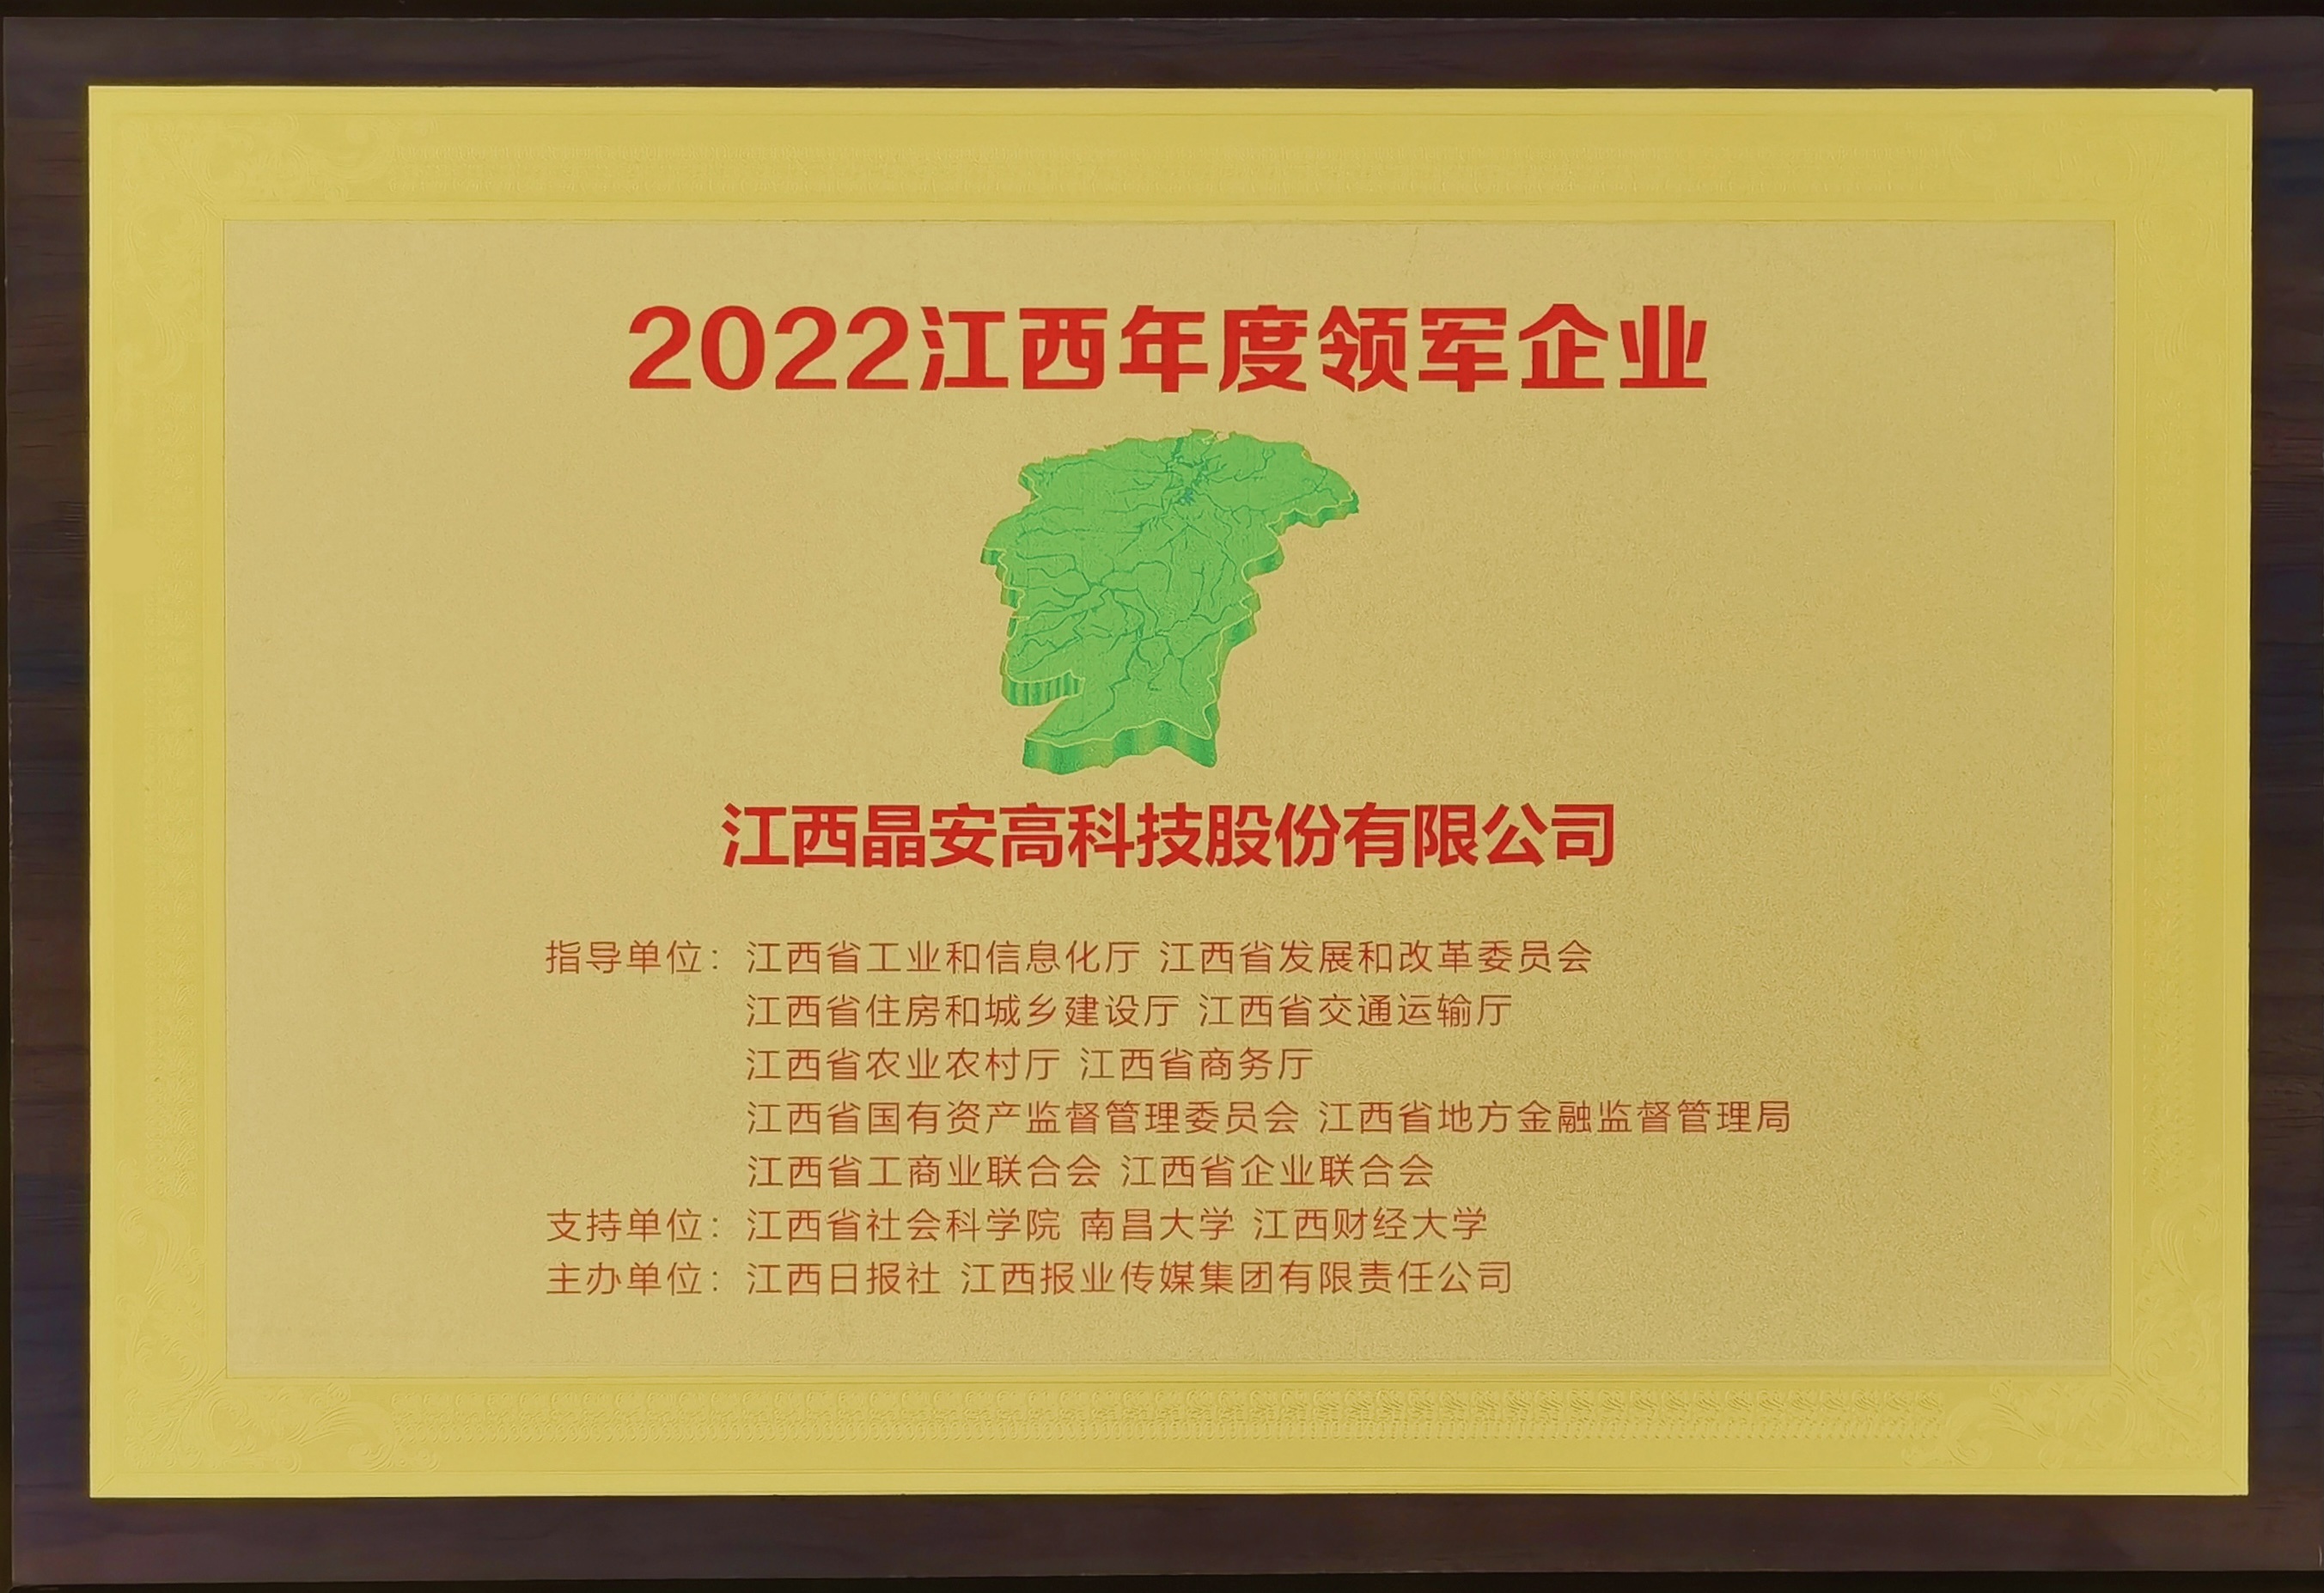 晶安高科获“2022年度江西领军企业”称号